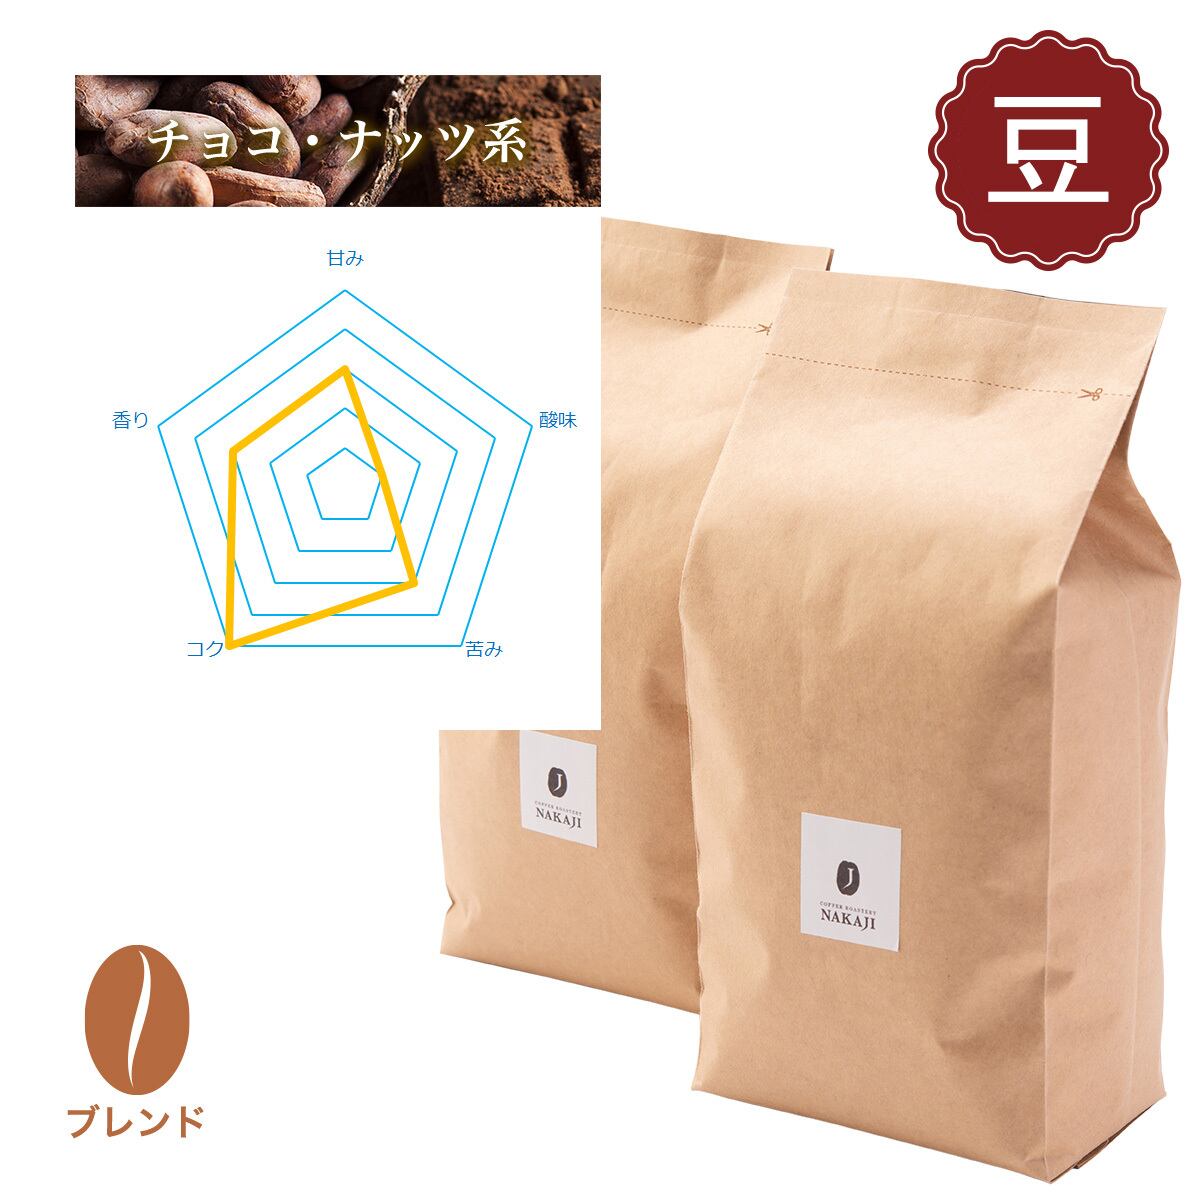 【業務用】ナカジブレンド02 [コーヒー豆:500g×2袋] チョコ、ナッツ系 NAKAJIオリジナル